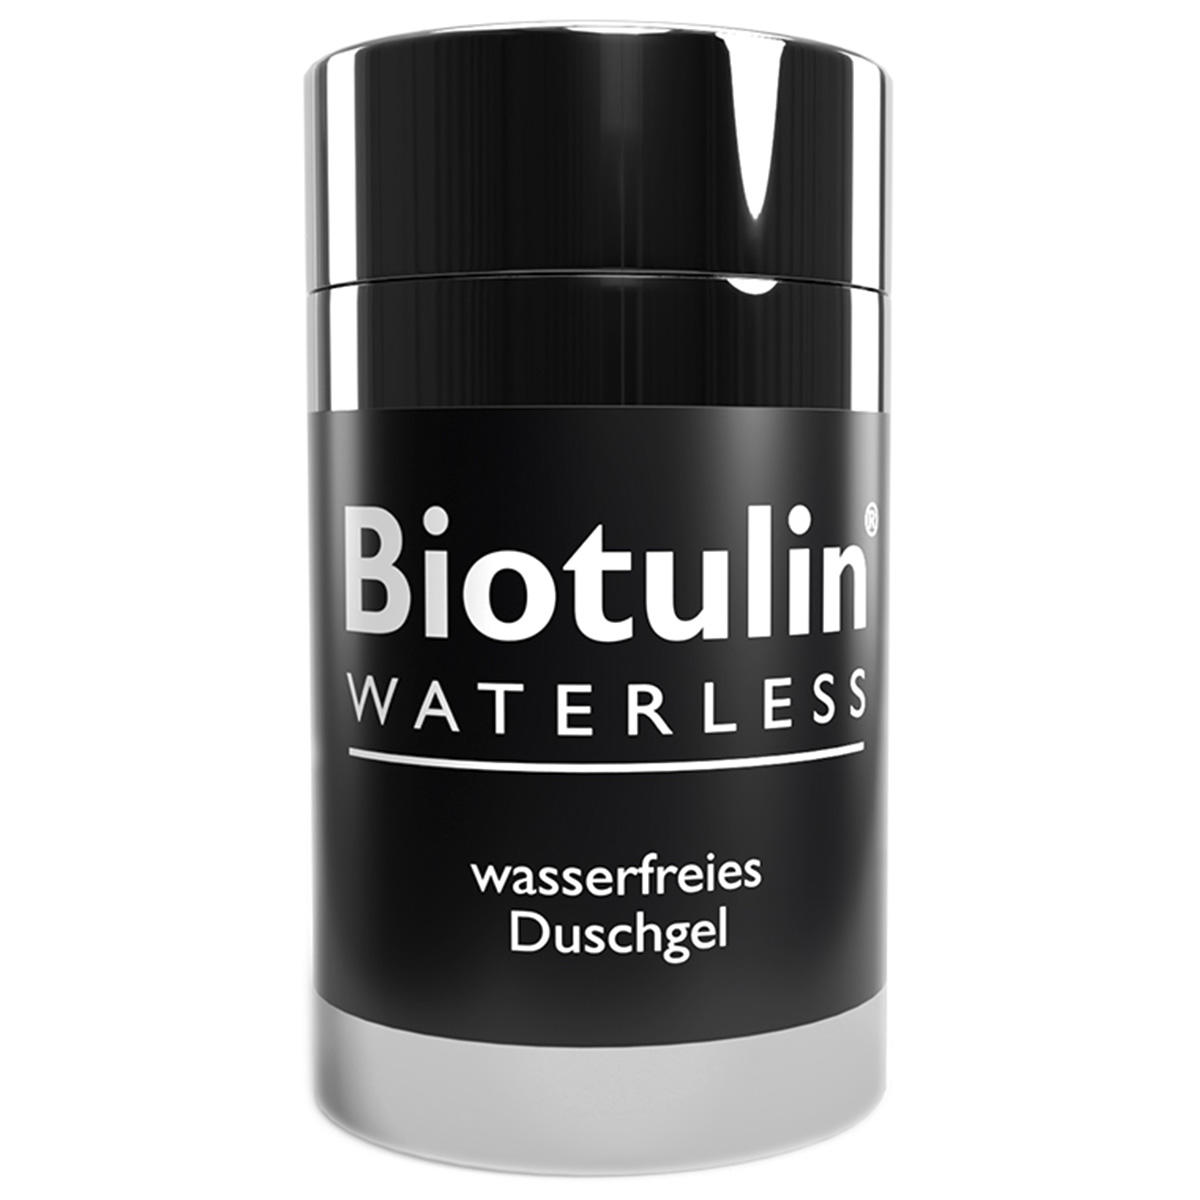 Biotulin WATERLESS waterless shower gel 70 g - 1